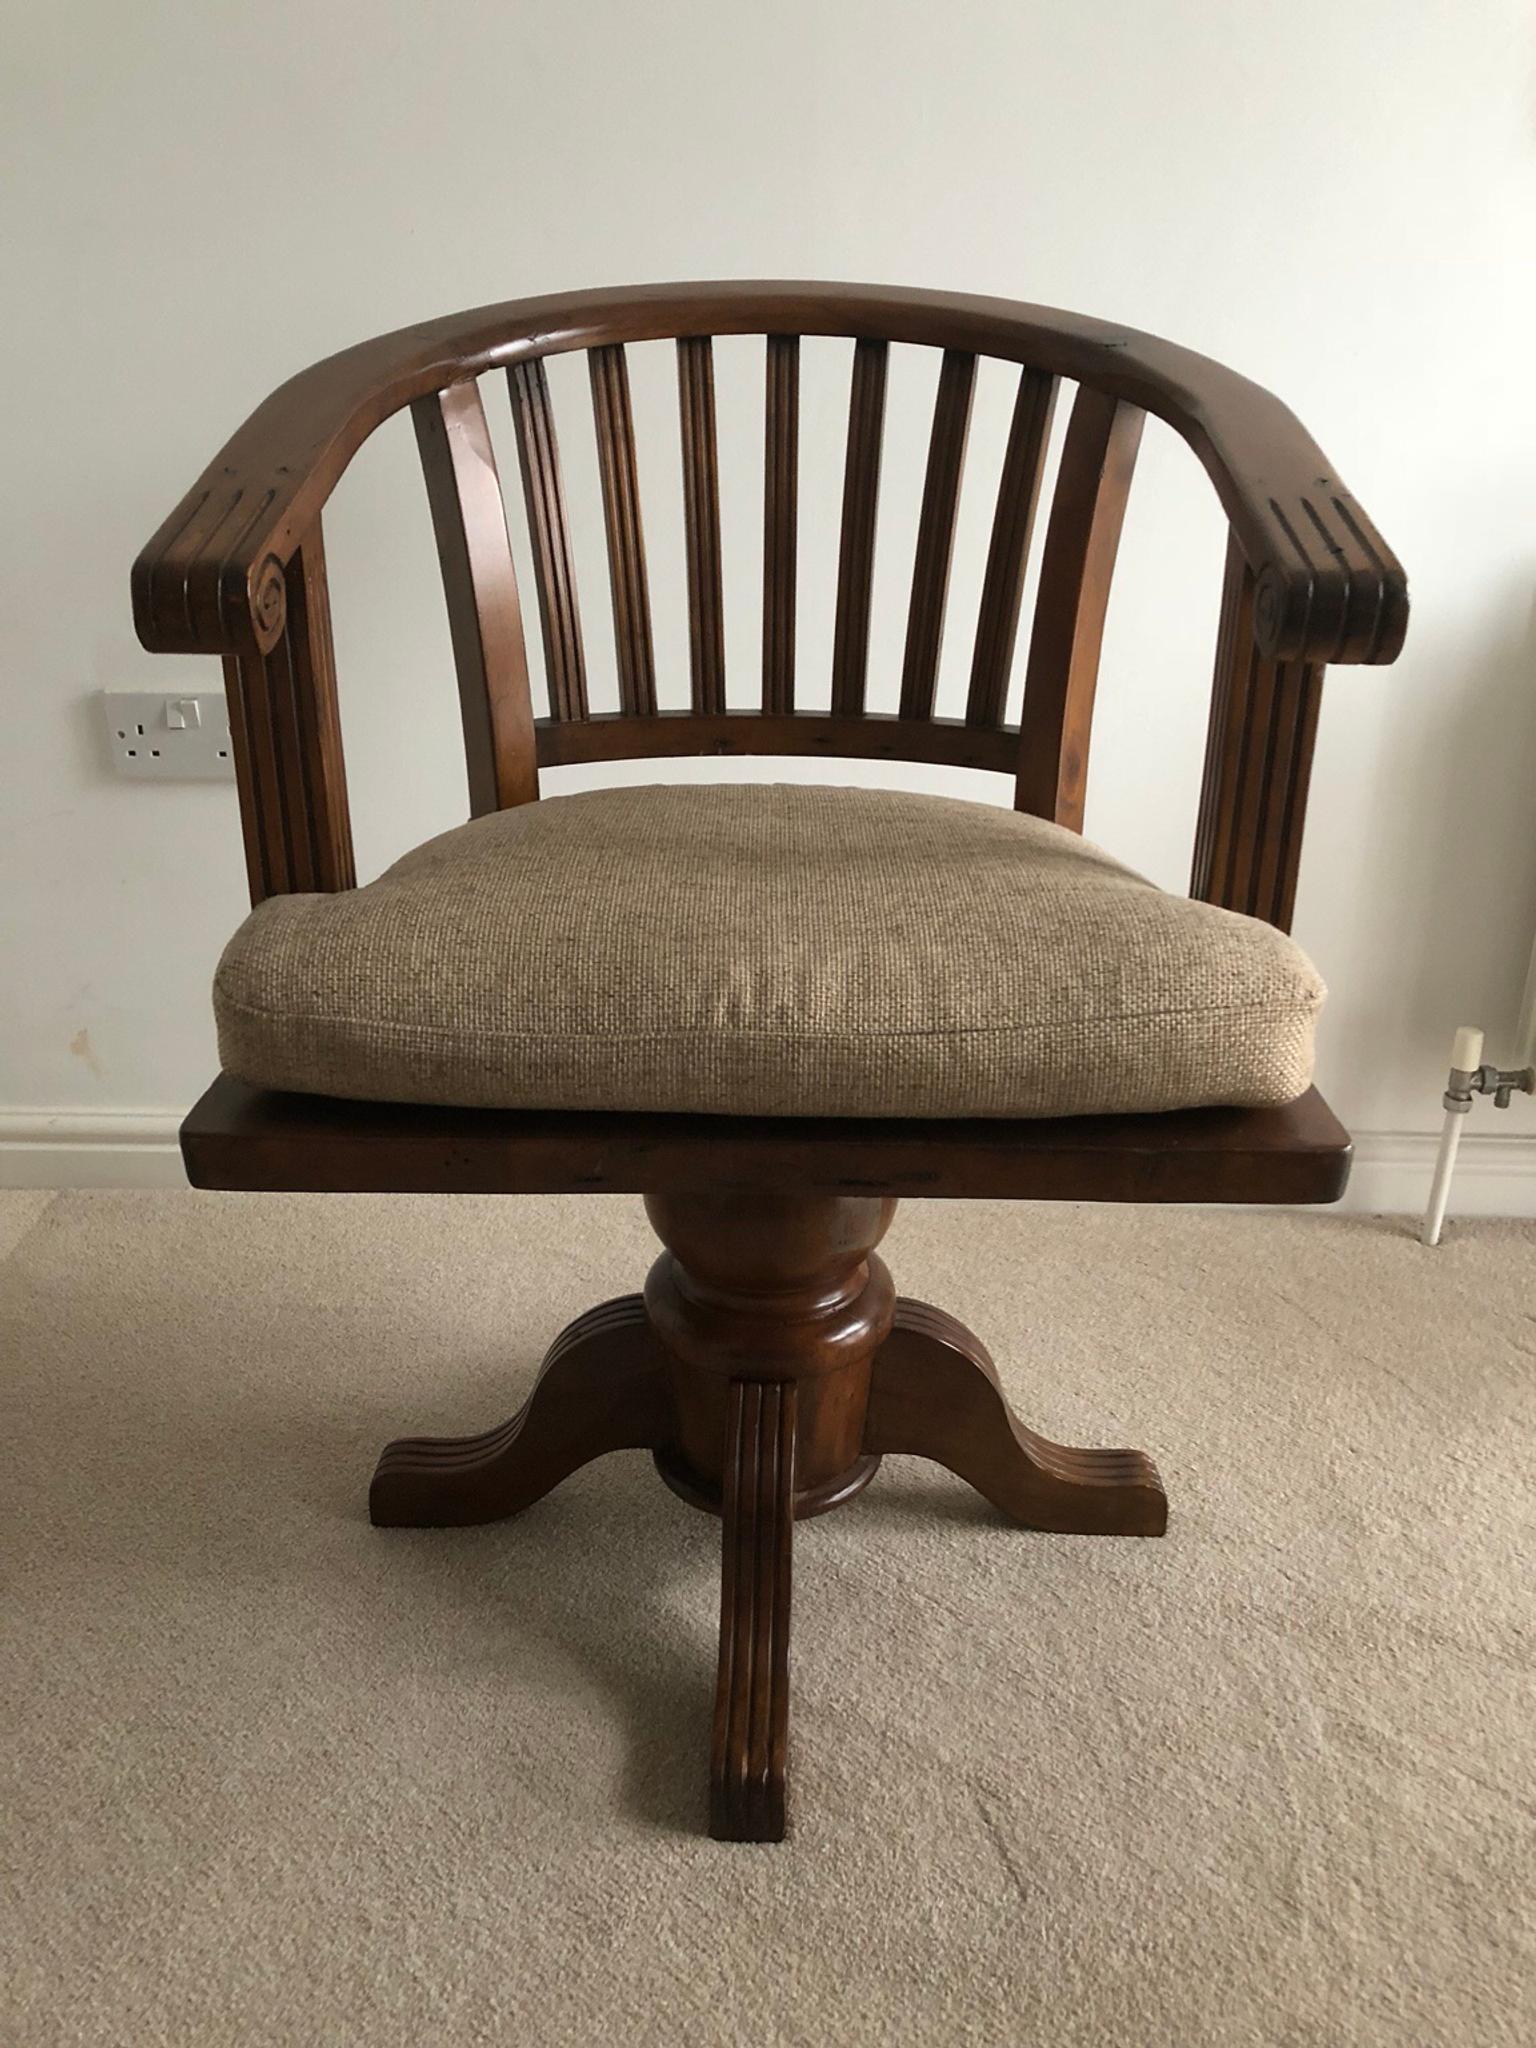 Antique Wooden Swivel Desk Chair In Sl6 Maidenhead Fur 75 00 Zum Verkauf Shpock At